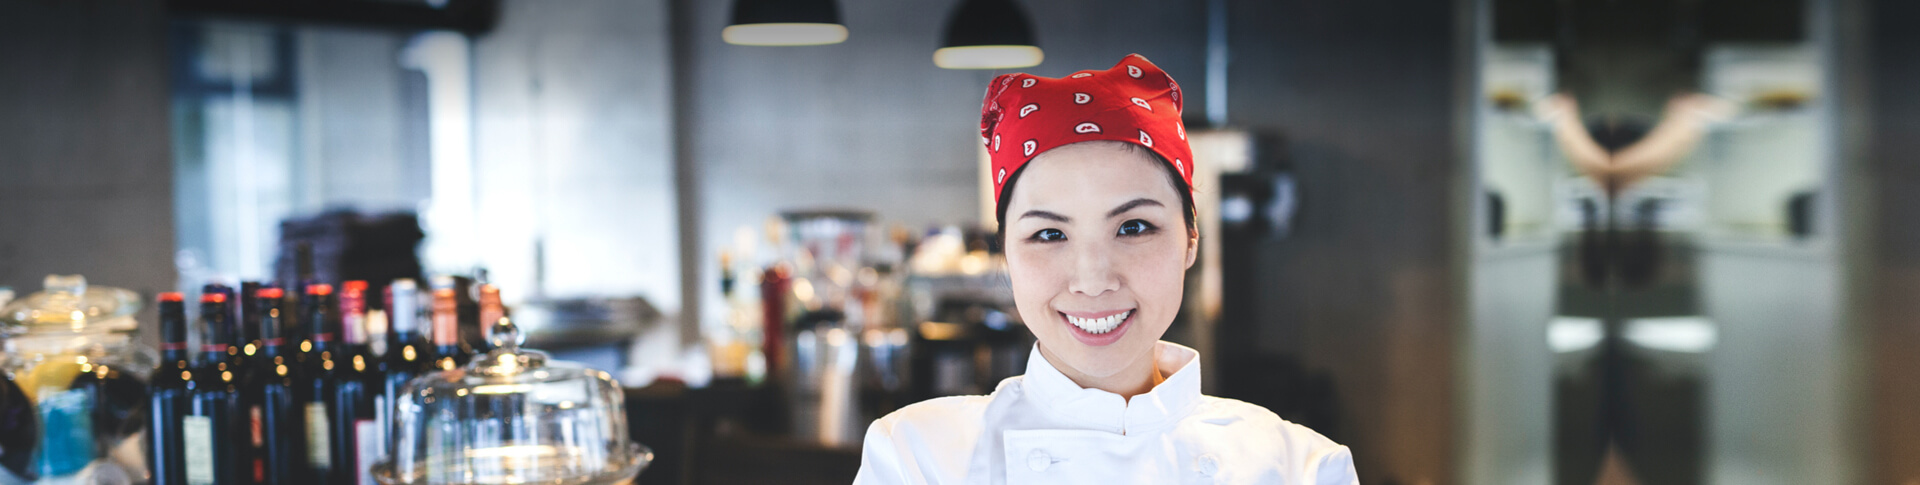 asiatische Frau in Kochkleidung neben Bar